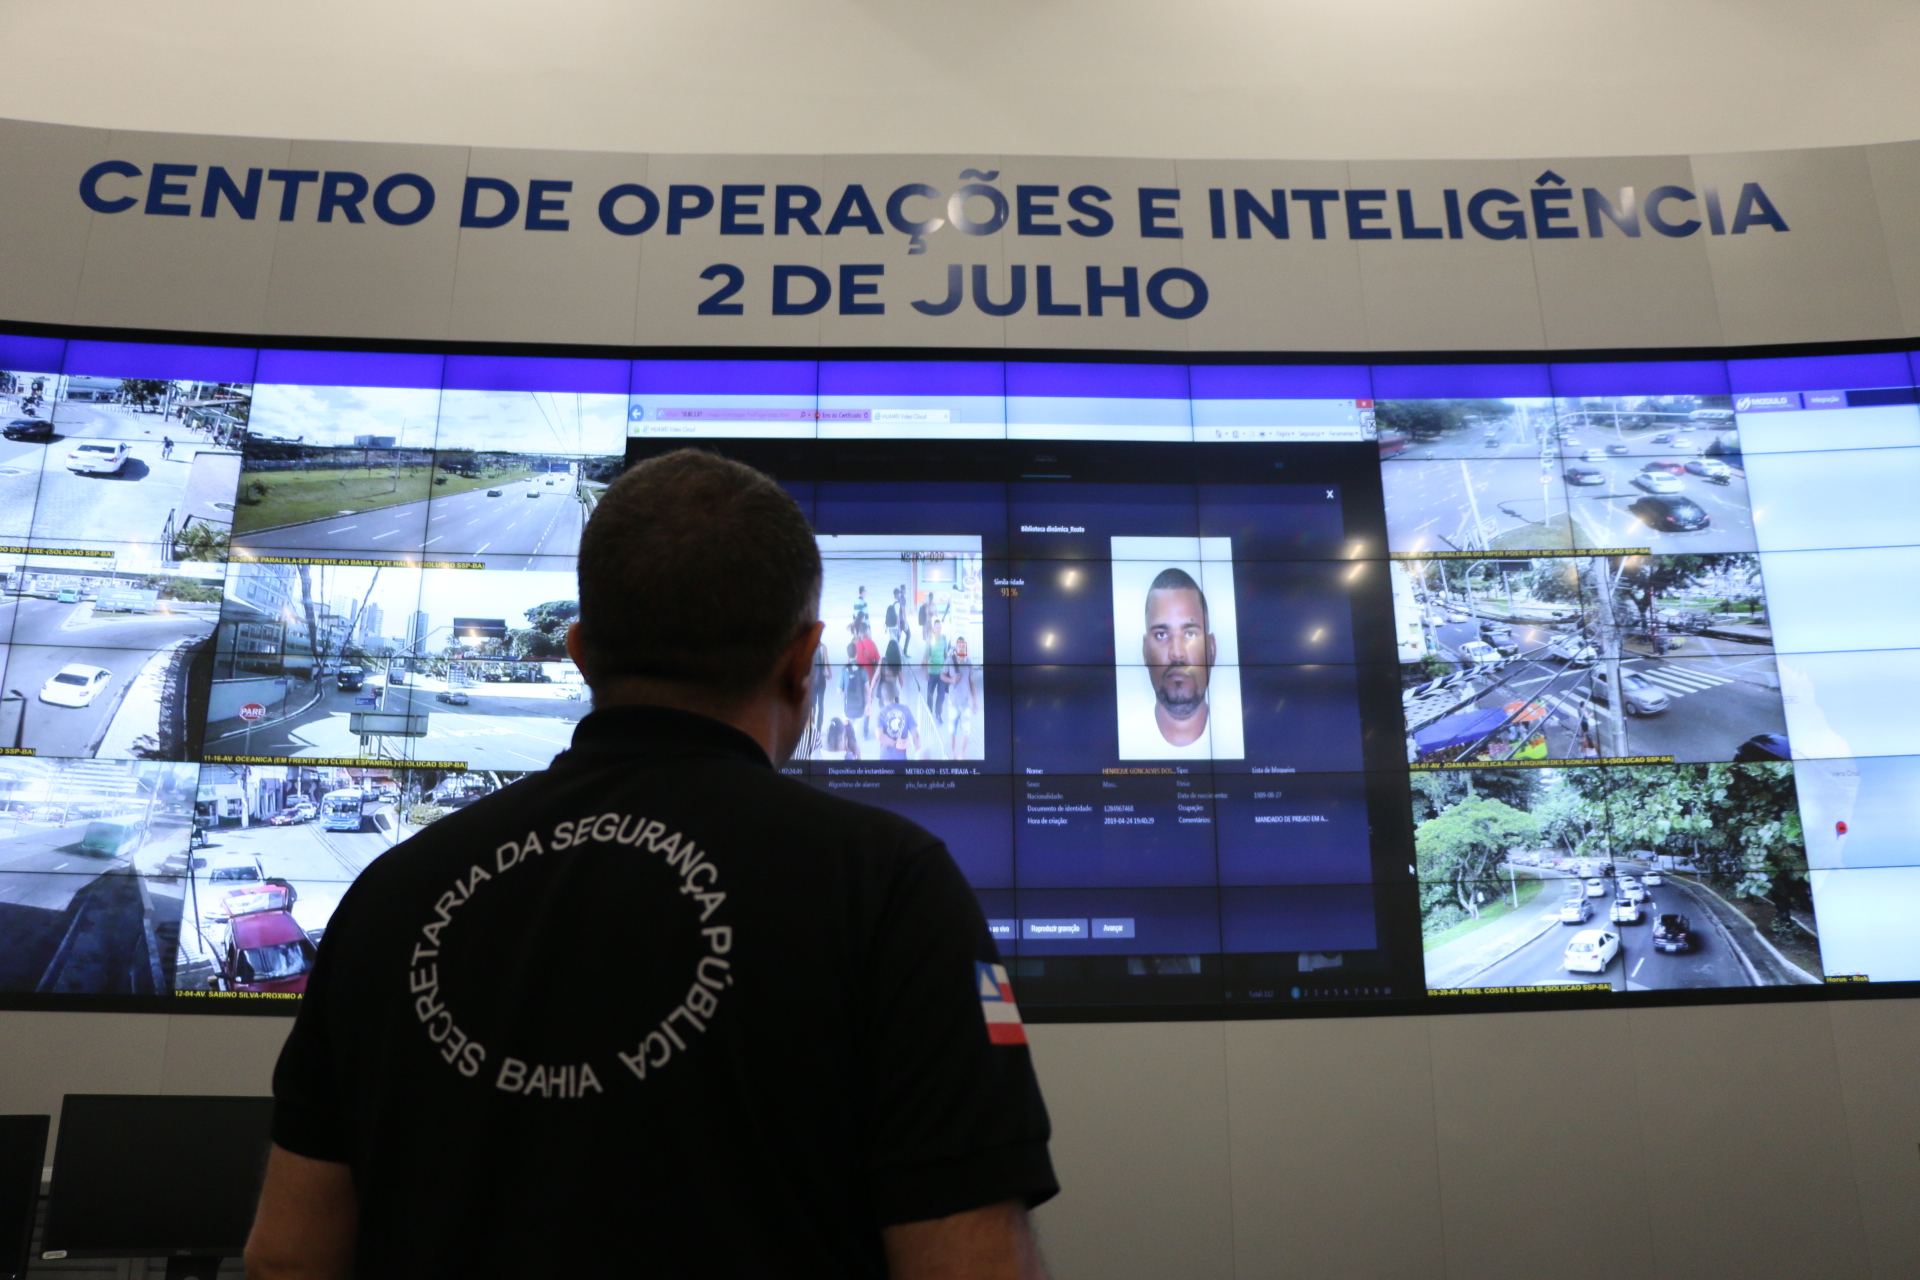 Reconhecimento facial identifica acusado de homicídio em estação do metrô de Salvador